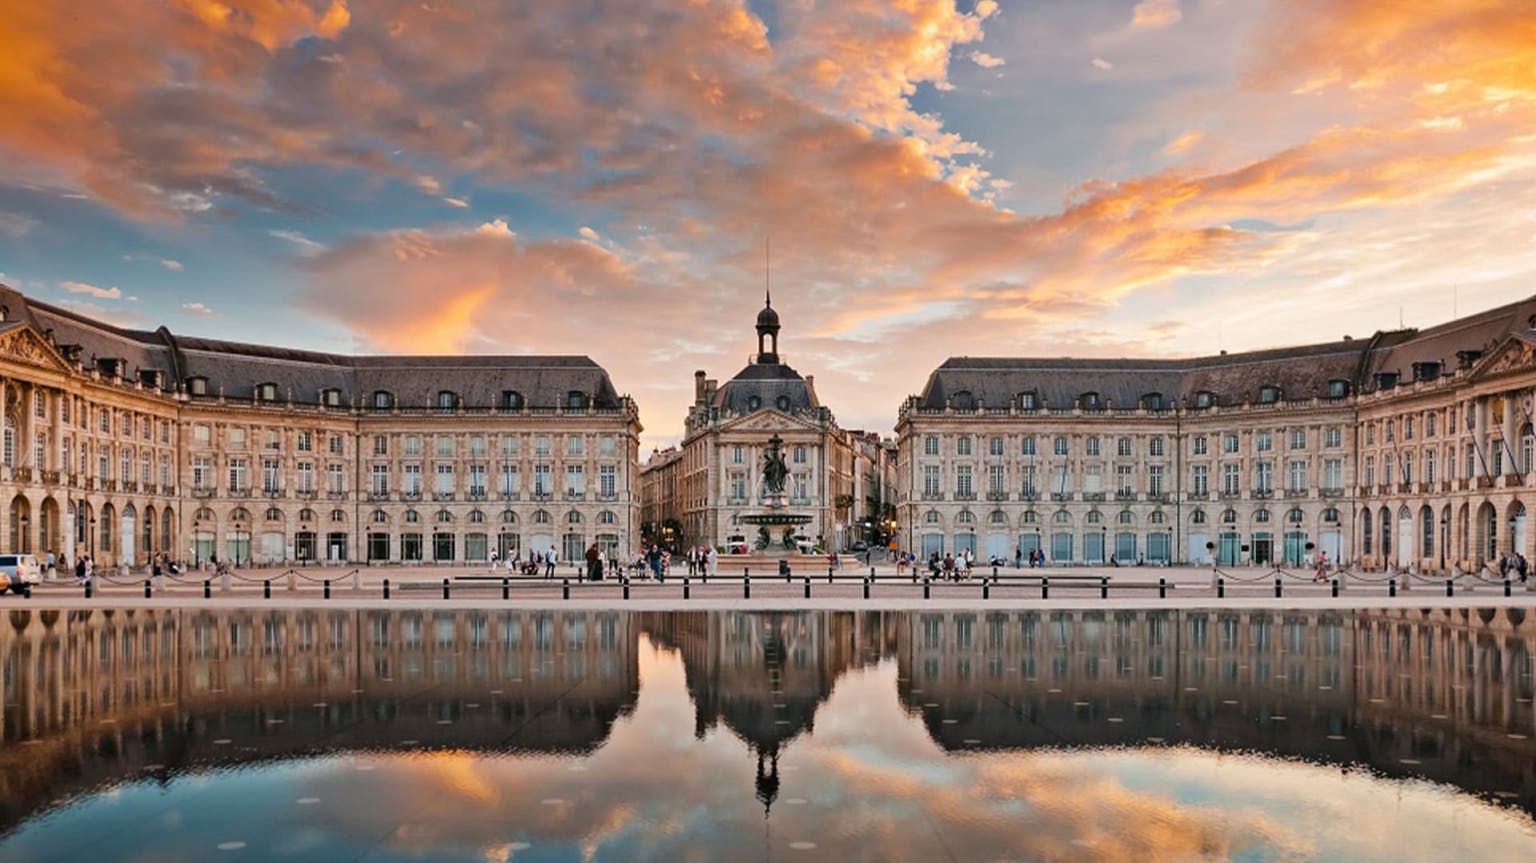 La Place de Bordeaux takes on the world's iconic wines